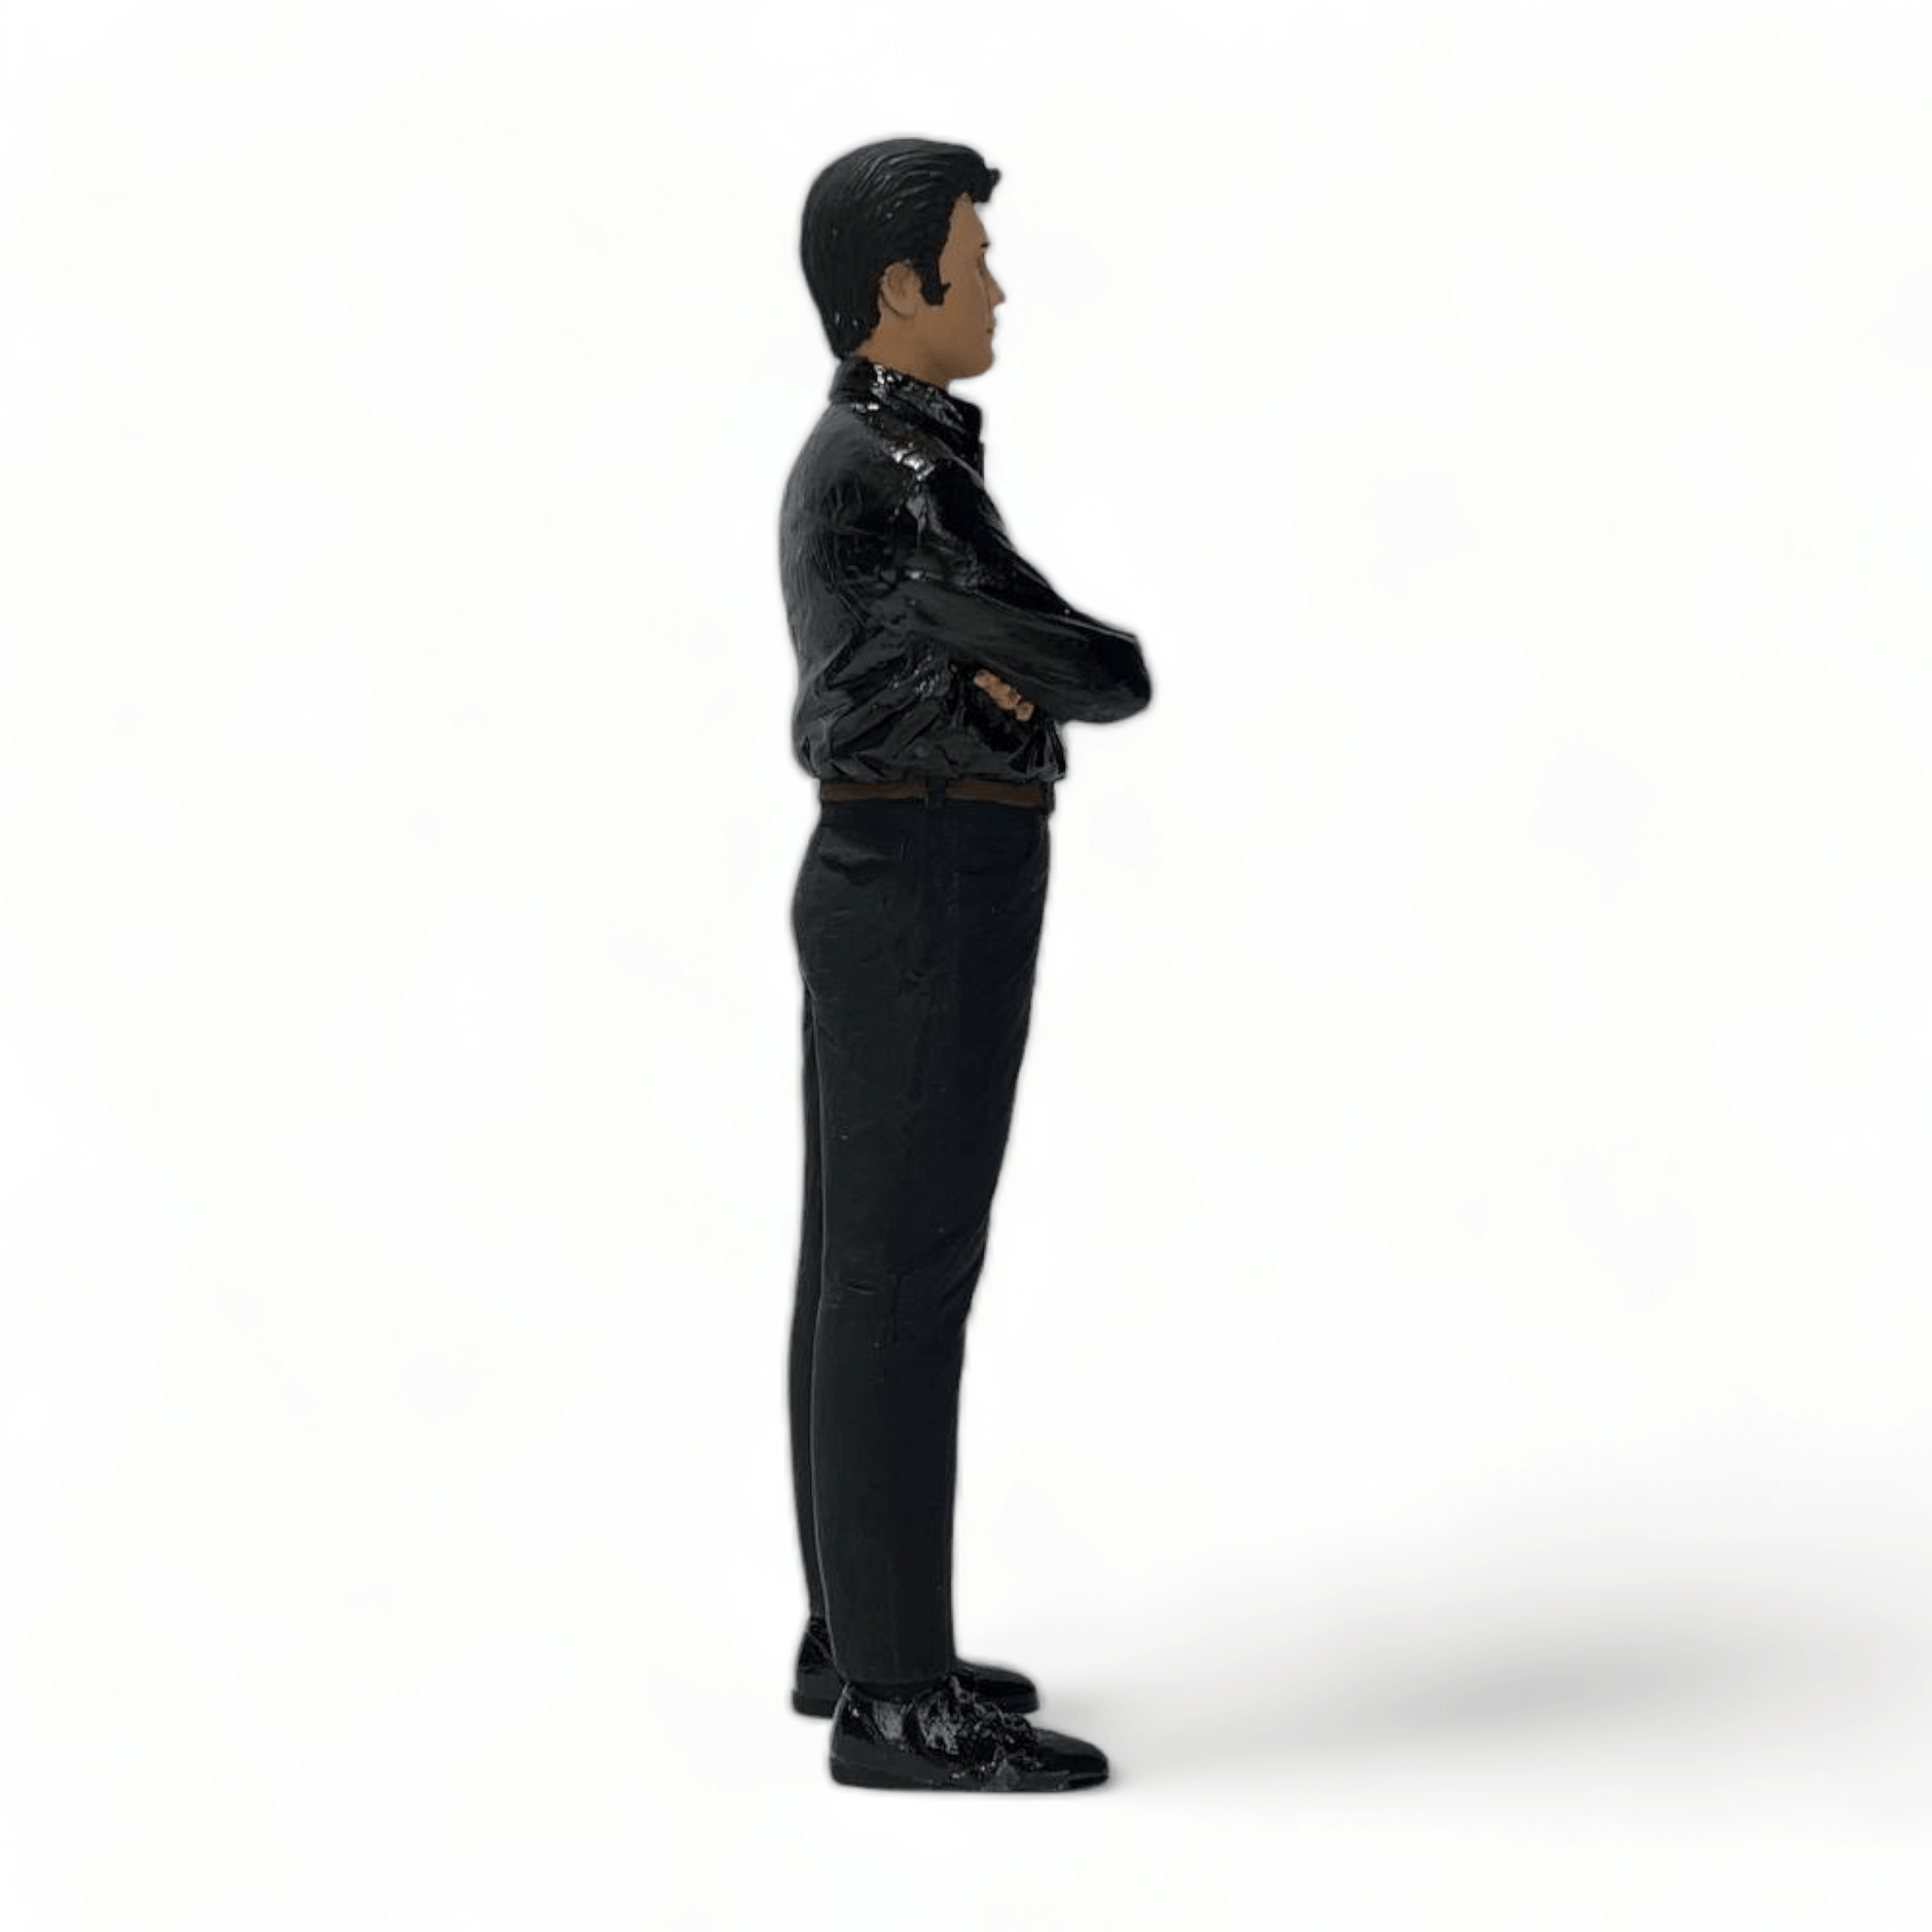 Scale Figure Elvis by SF 1/18 SF-118140|Sold in Dturman.com Dubai UAE.